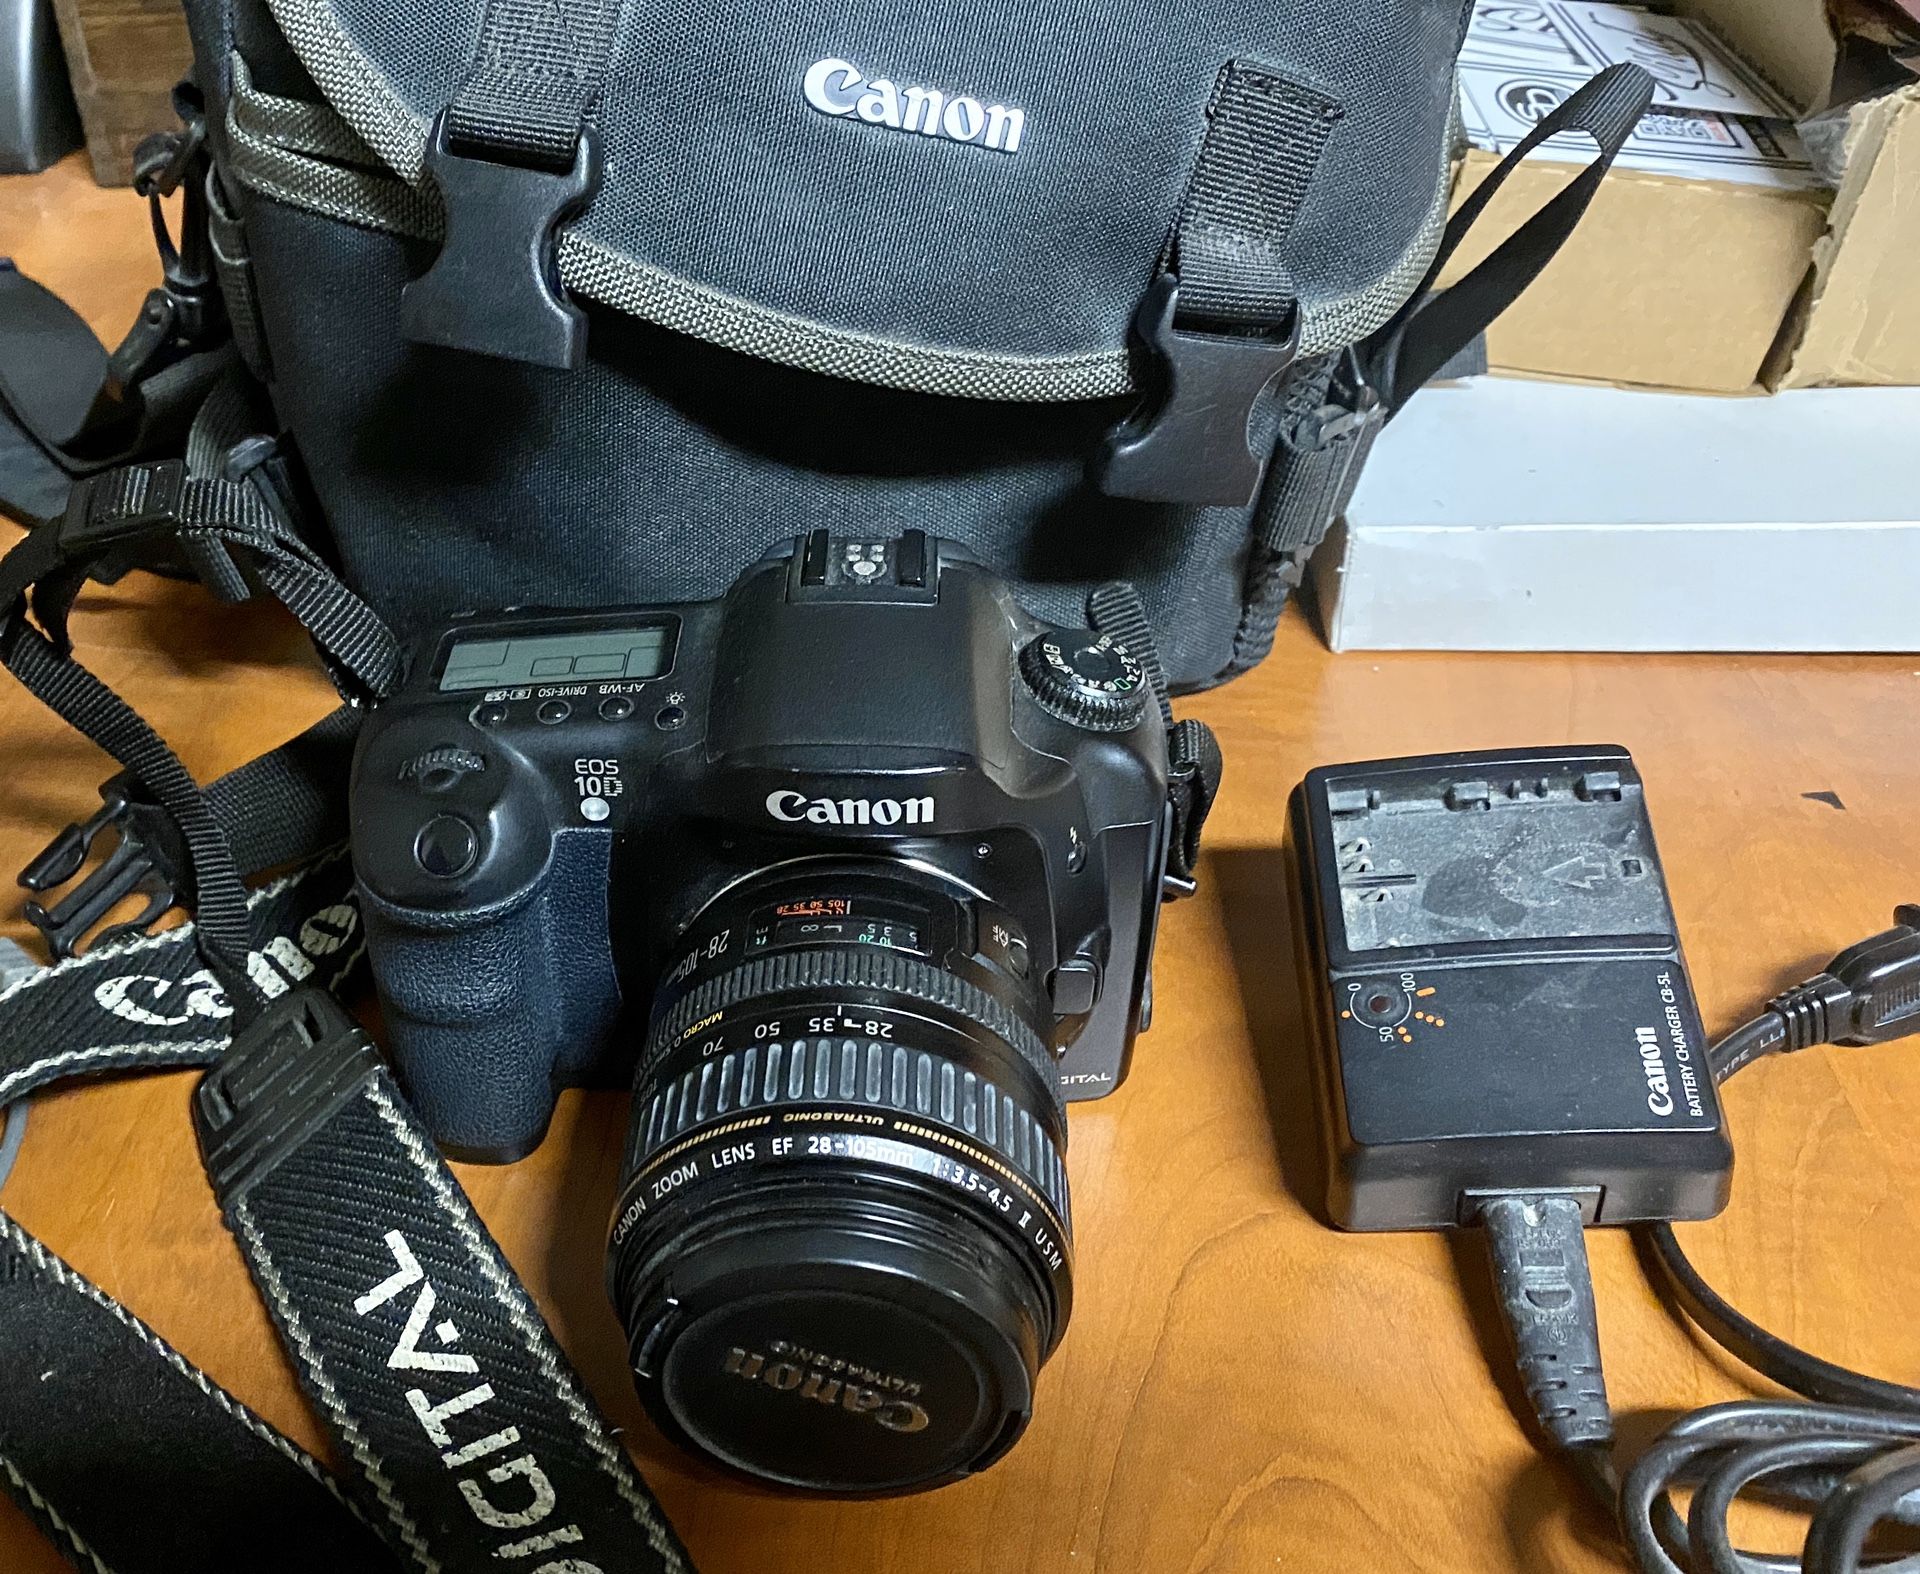 Canon 10D DSLR Kit w/ 28-105mm Lens